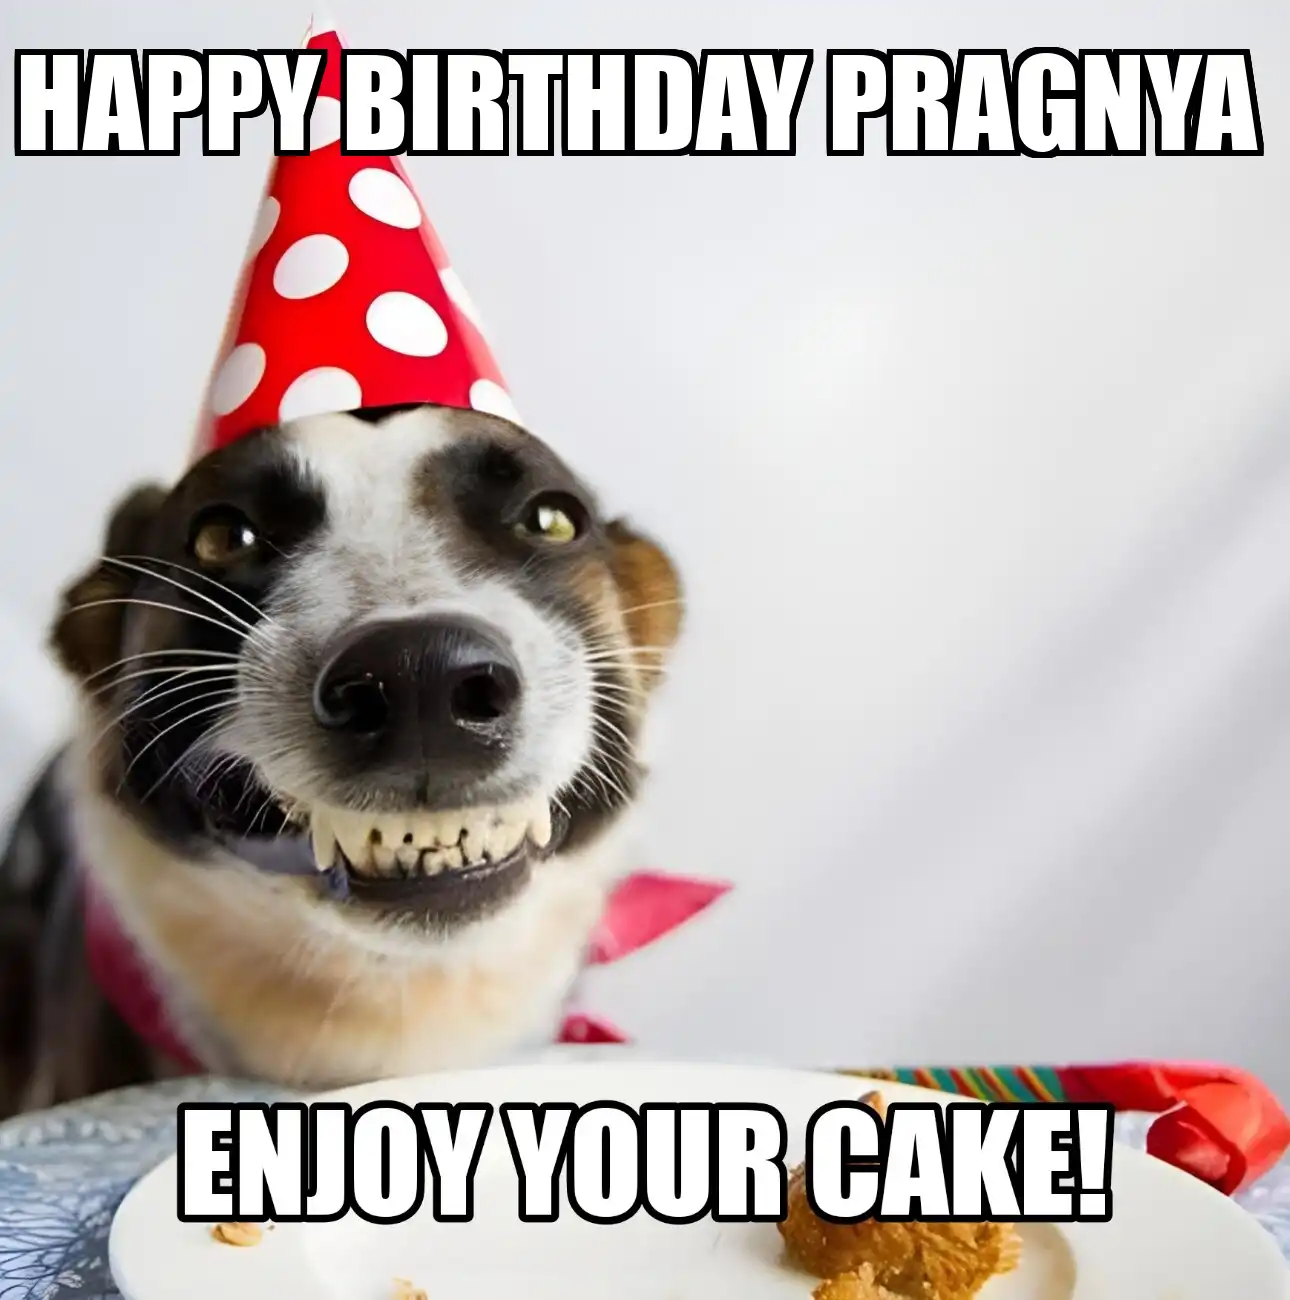 Happy Birthday Pragnya Enjoy Your Cake Dog Meme